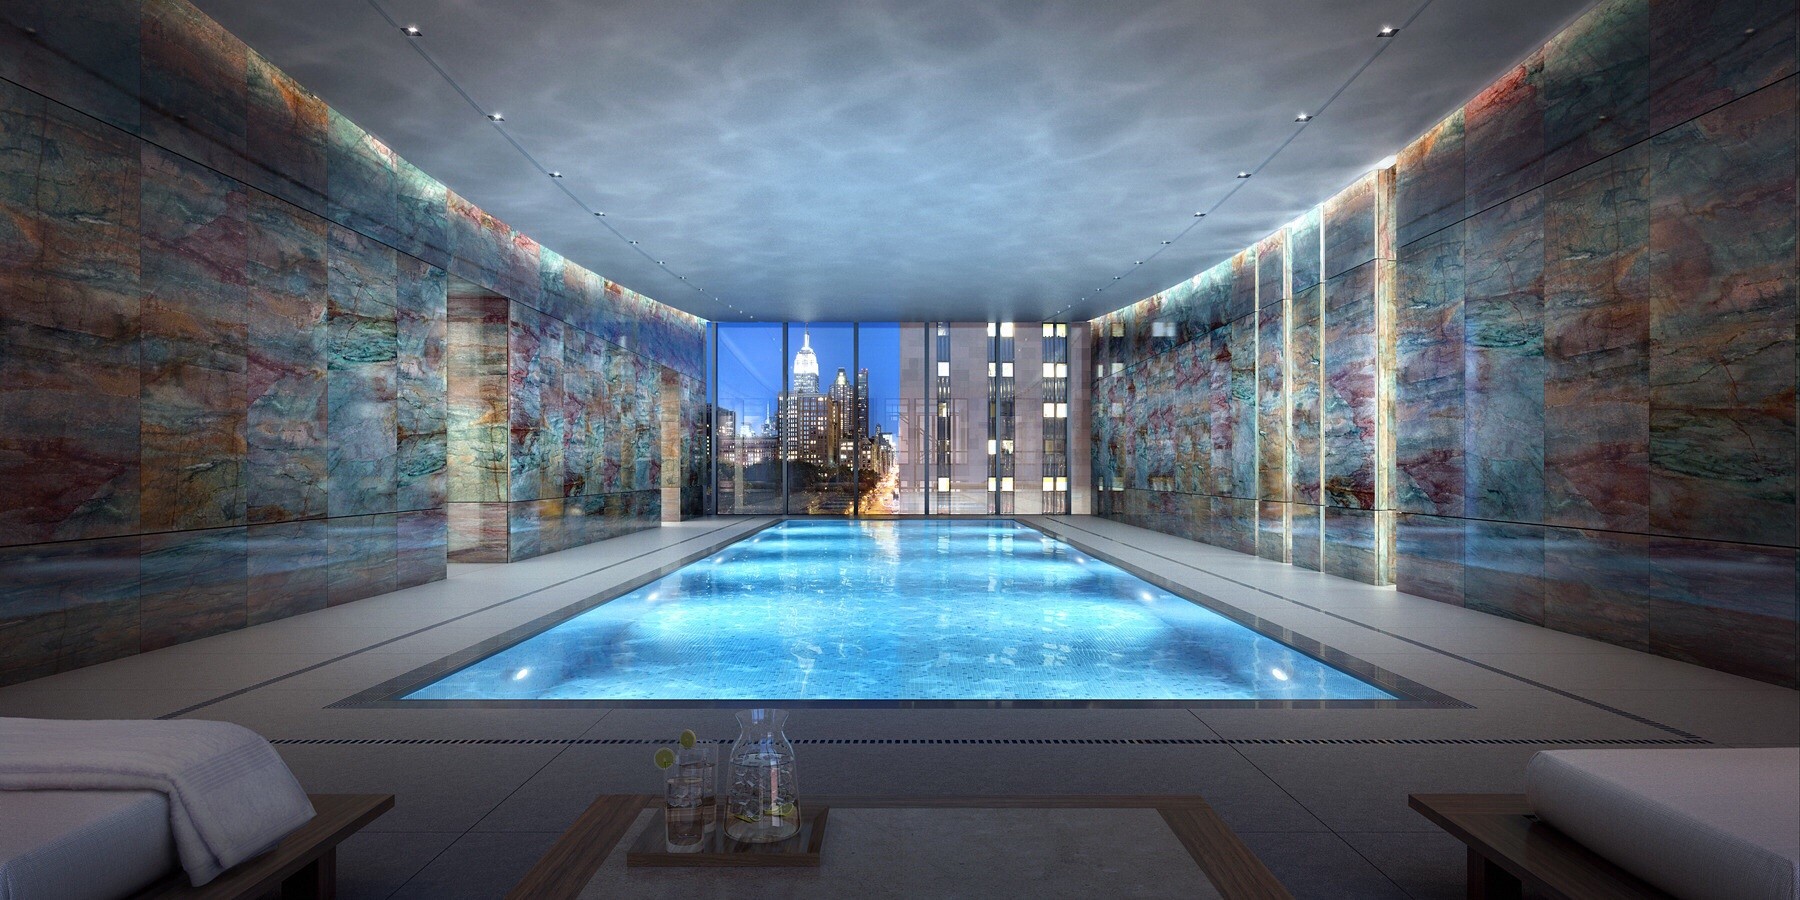 General 1800x900 digital art swimming pool interior indoors